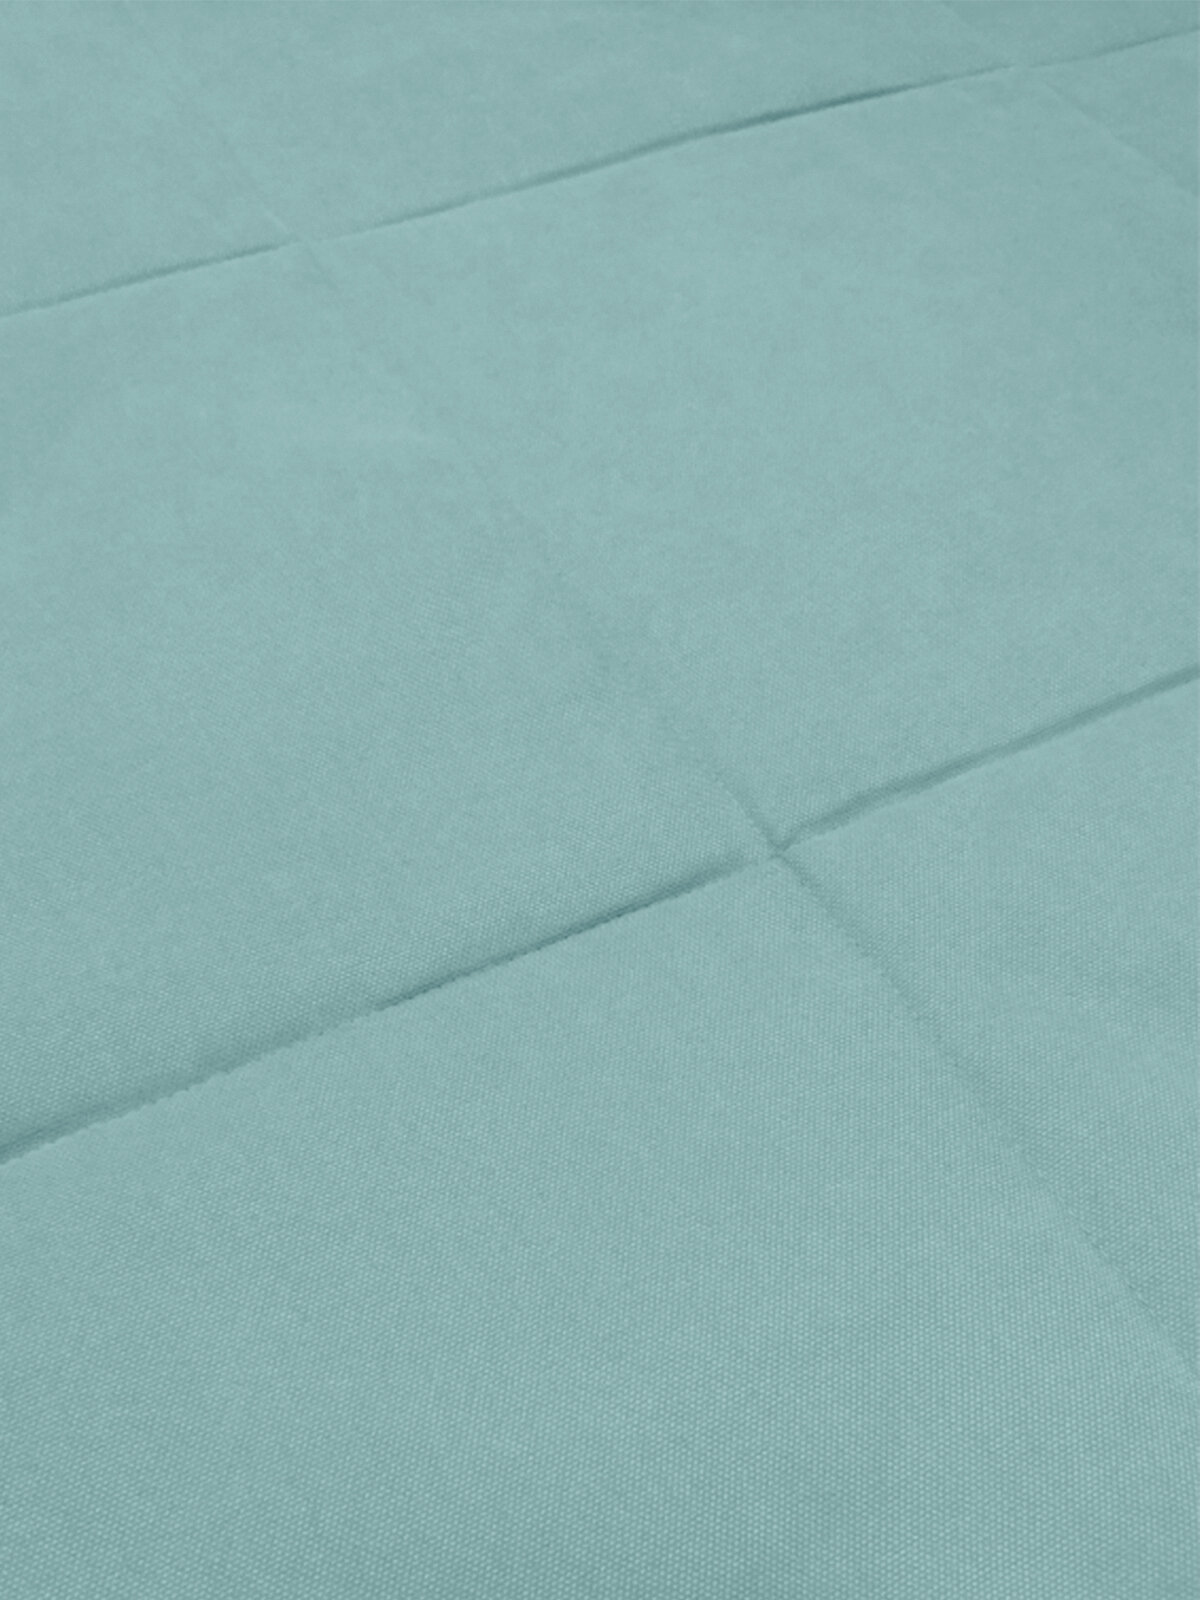 Покрывало плед стеганое Велюр - канвас Светло бирюзовый, голубой, 220 х 235 см. на кровать, диван с подкладкой синтепон - фотография № 5